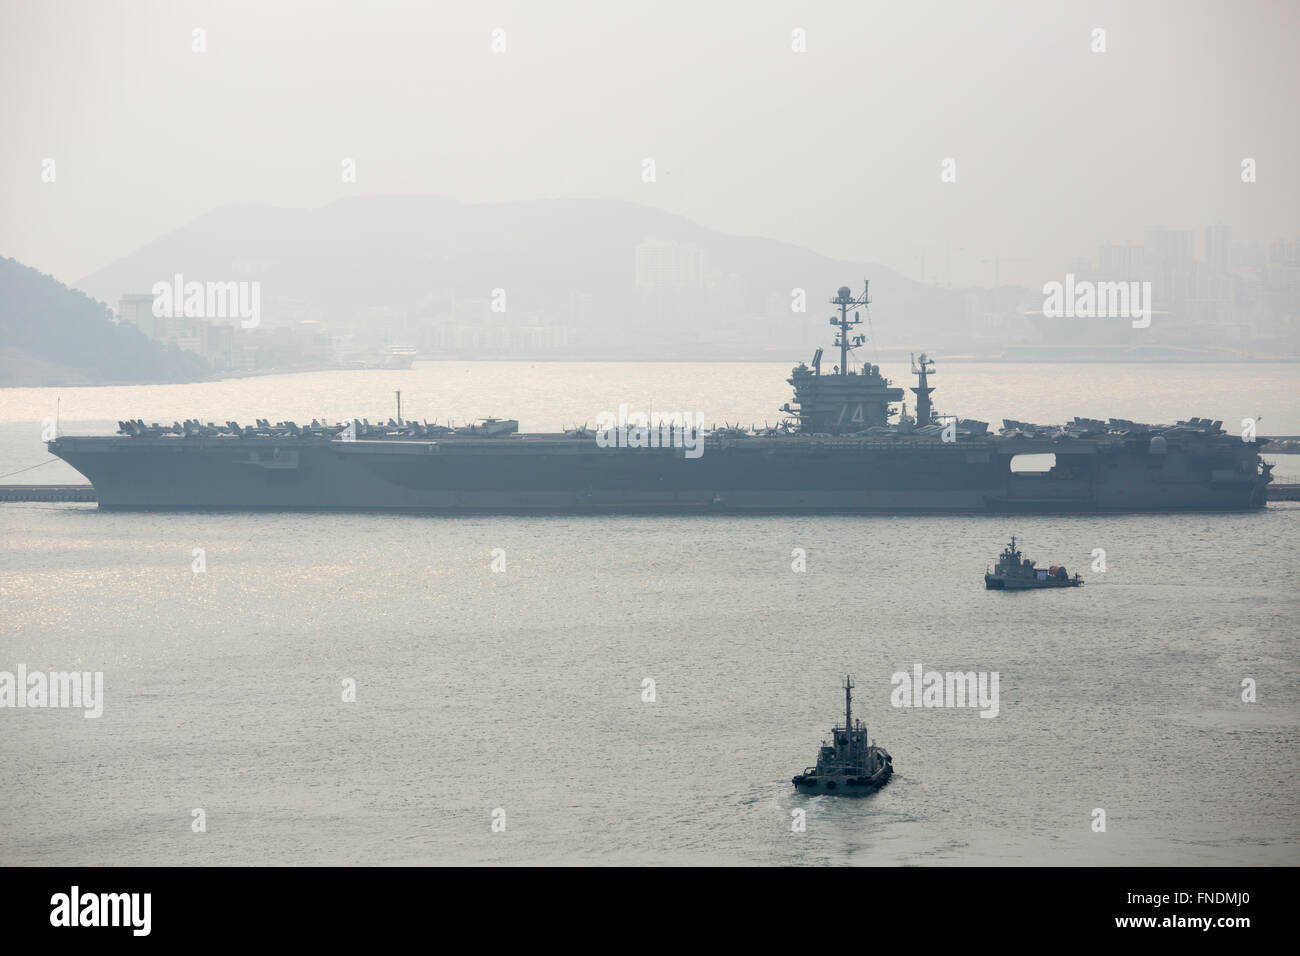 La USS John C. Stennis, Mar 14, 2016 : nucleare degli Stati Uniti-powered supercarrier, la USS John C. Stennis è visto a sud coreano porta marina in Busan, circa 450 km a sud-est di Seoul, Corea del Sud. La USS John C. Stennis (CVN-74) sono arrivati in Corea del Sud il 13 marzo 2016 a partecipare in chiave di risolvere esercitazioni militari tra la Corea del Sud e gli Stati Uniti, il quale è trattenuto da marzo 7-18. La USS John C. Stennis è la U.S. Navy il settimo Nimitz-class supercarrier, caricato con marine e navy compresi l'F/A-18 Hornet, EA-6B Prowler getti di combattimento e la E-2C Hawkeye di allarme precoce velivoli del tipo AW Foto Stock